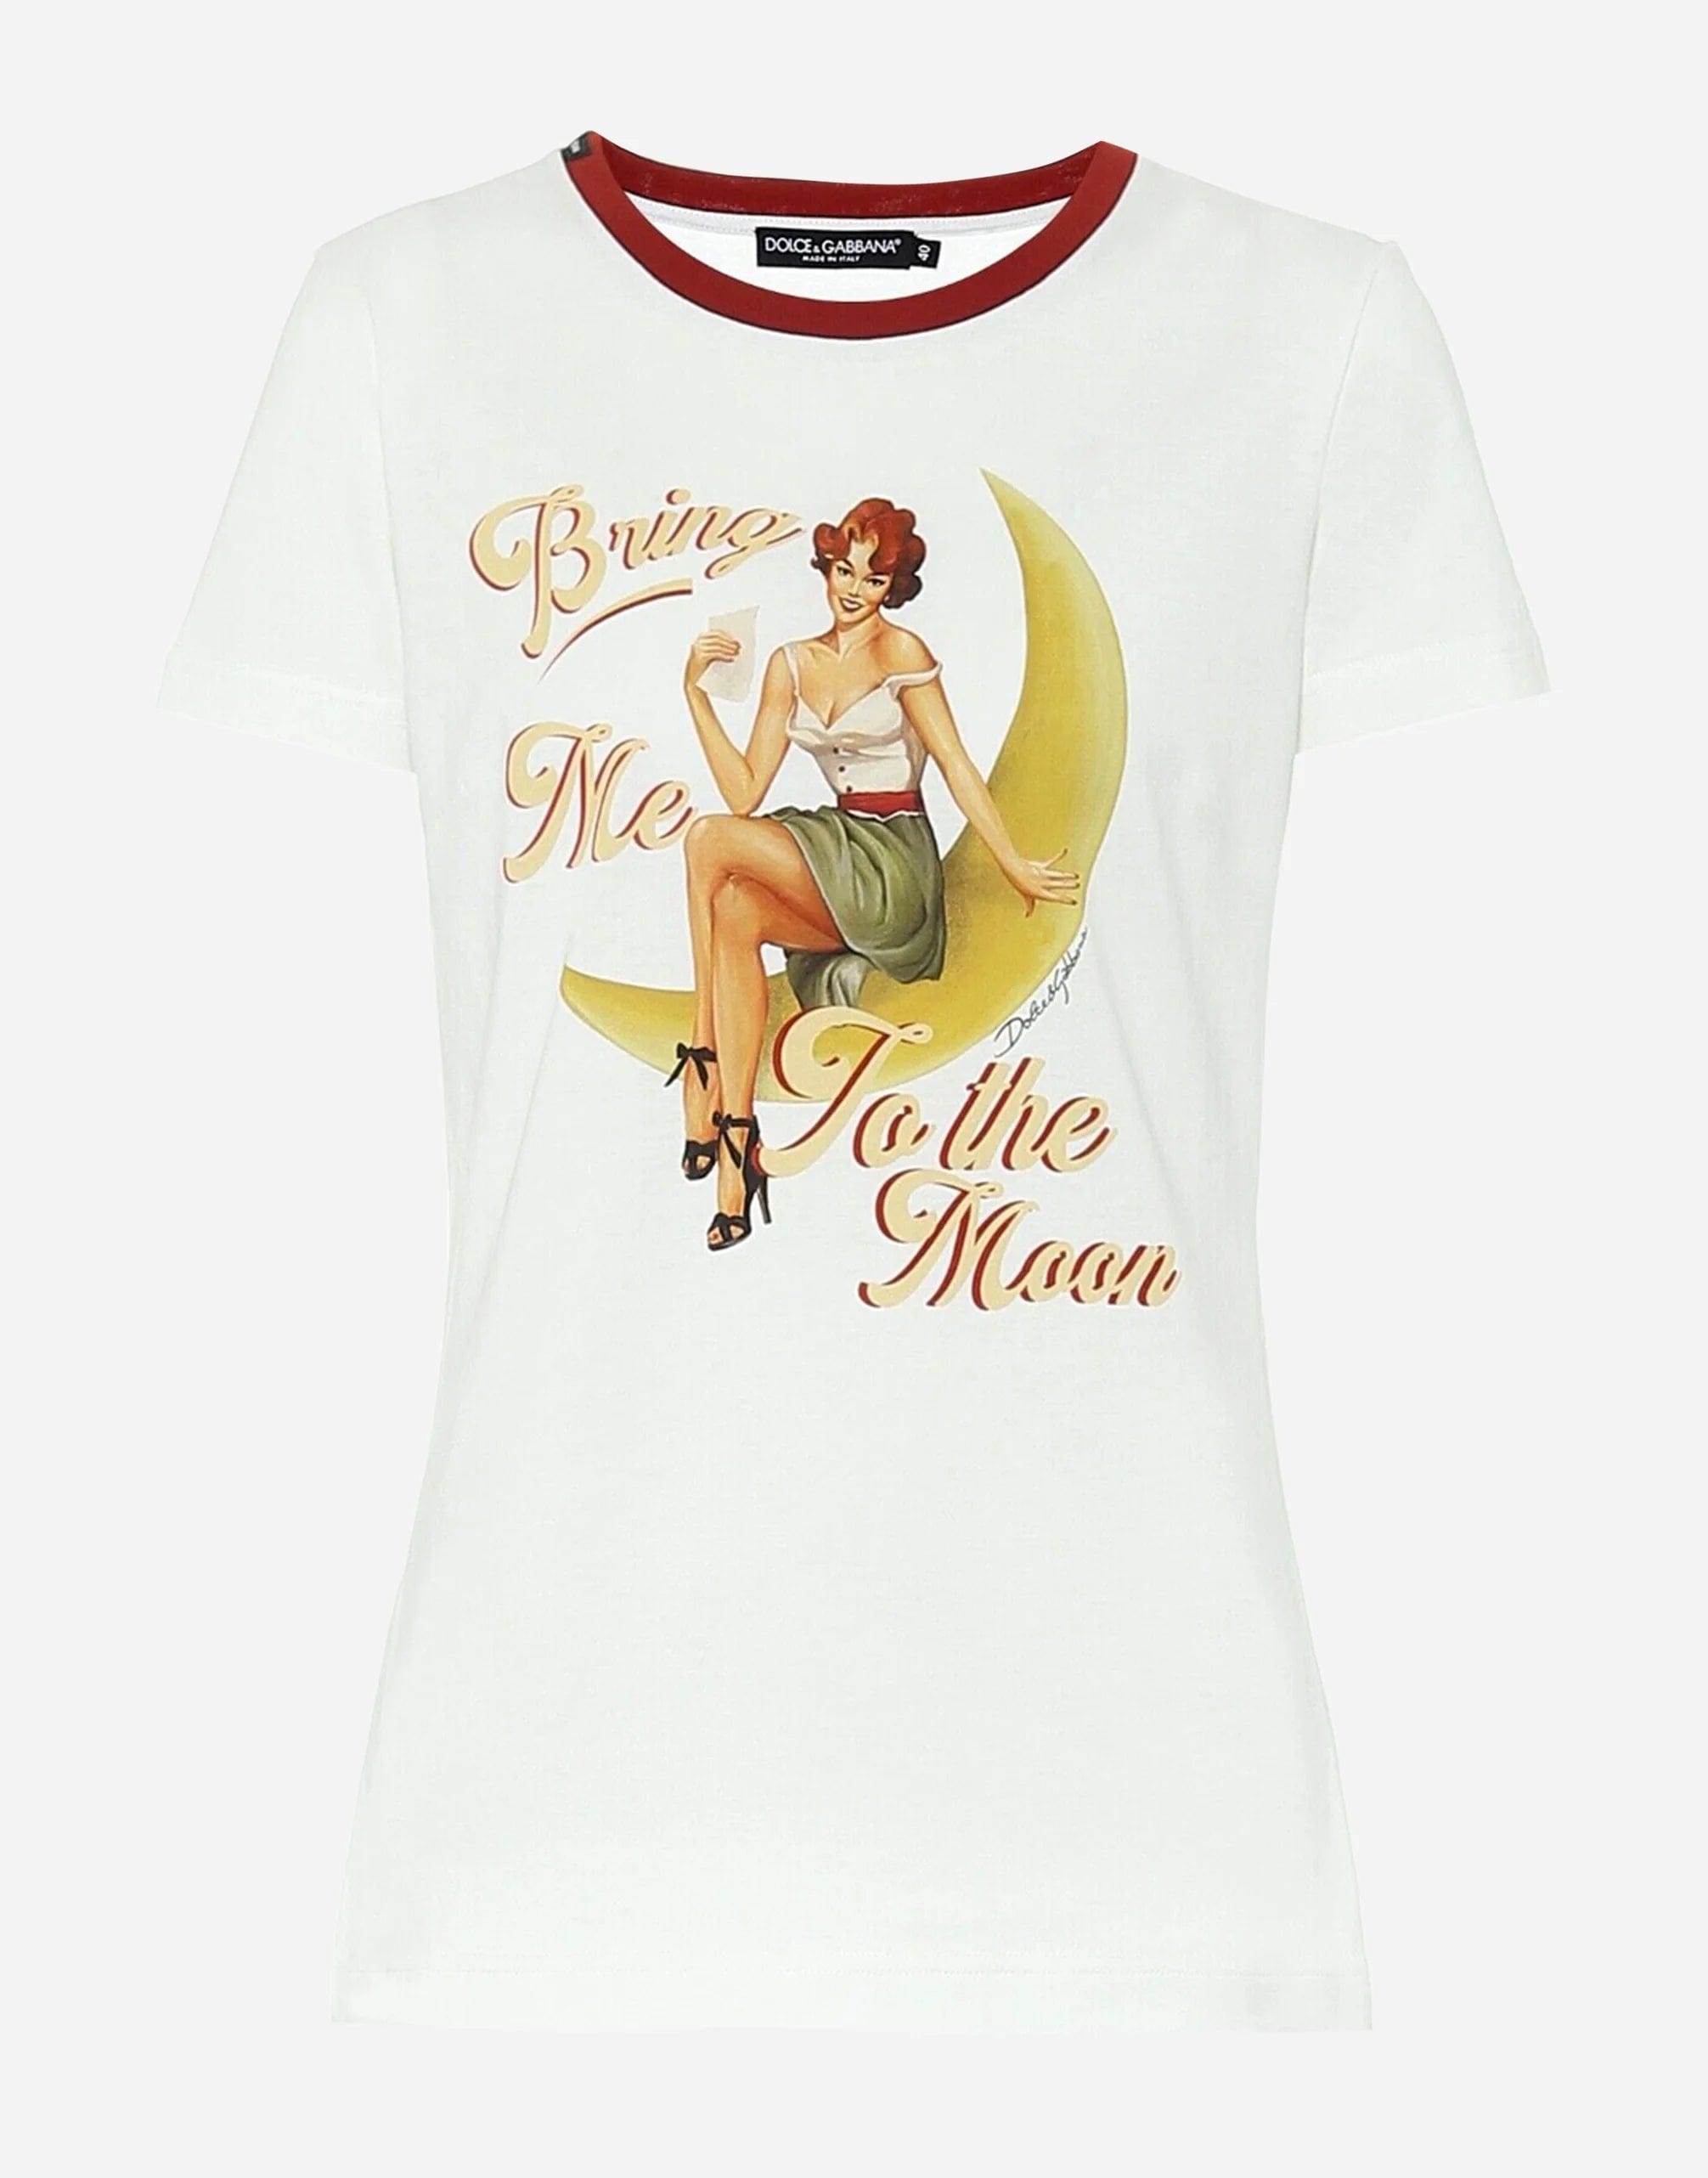 私を月に連れて行ってください。Tシャツ